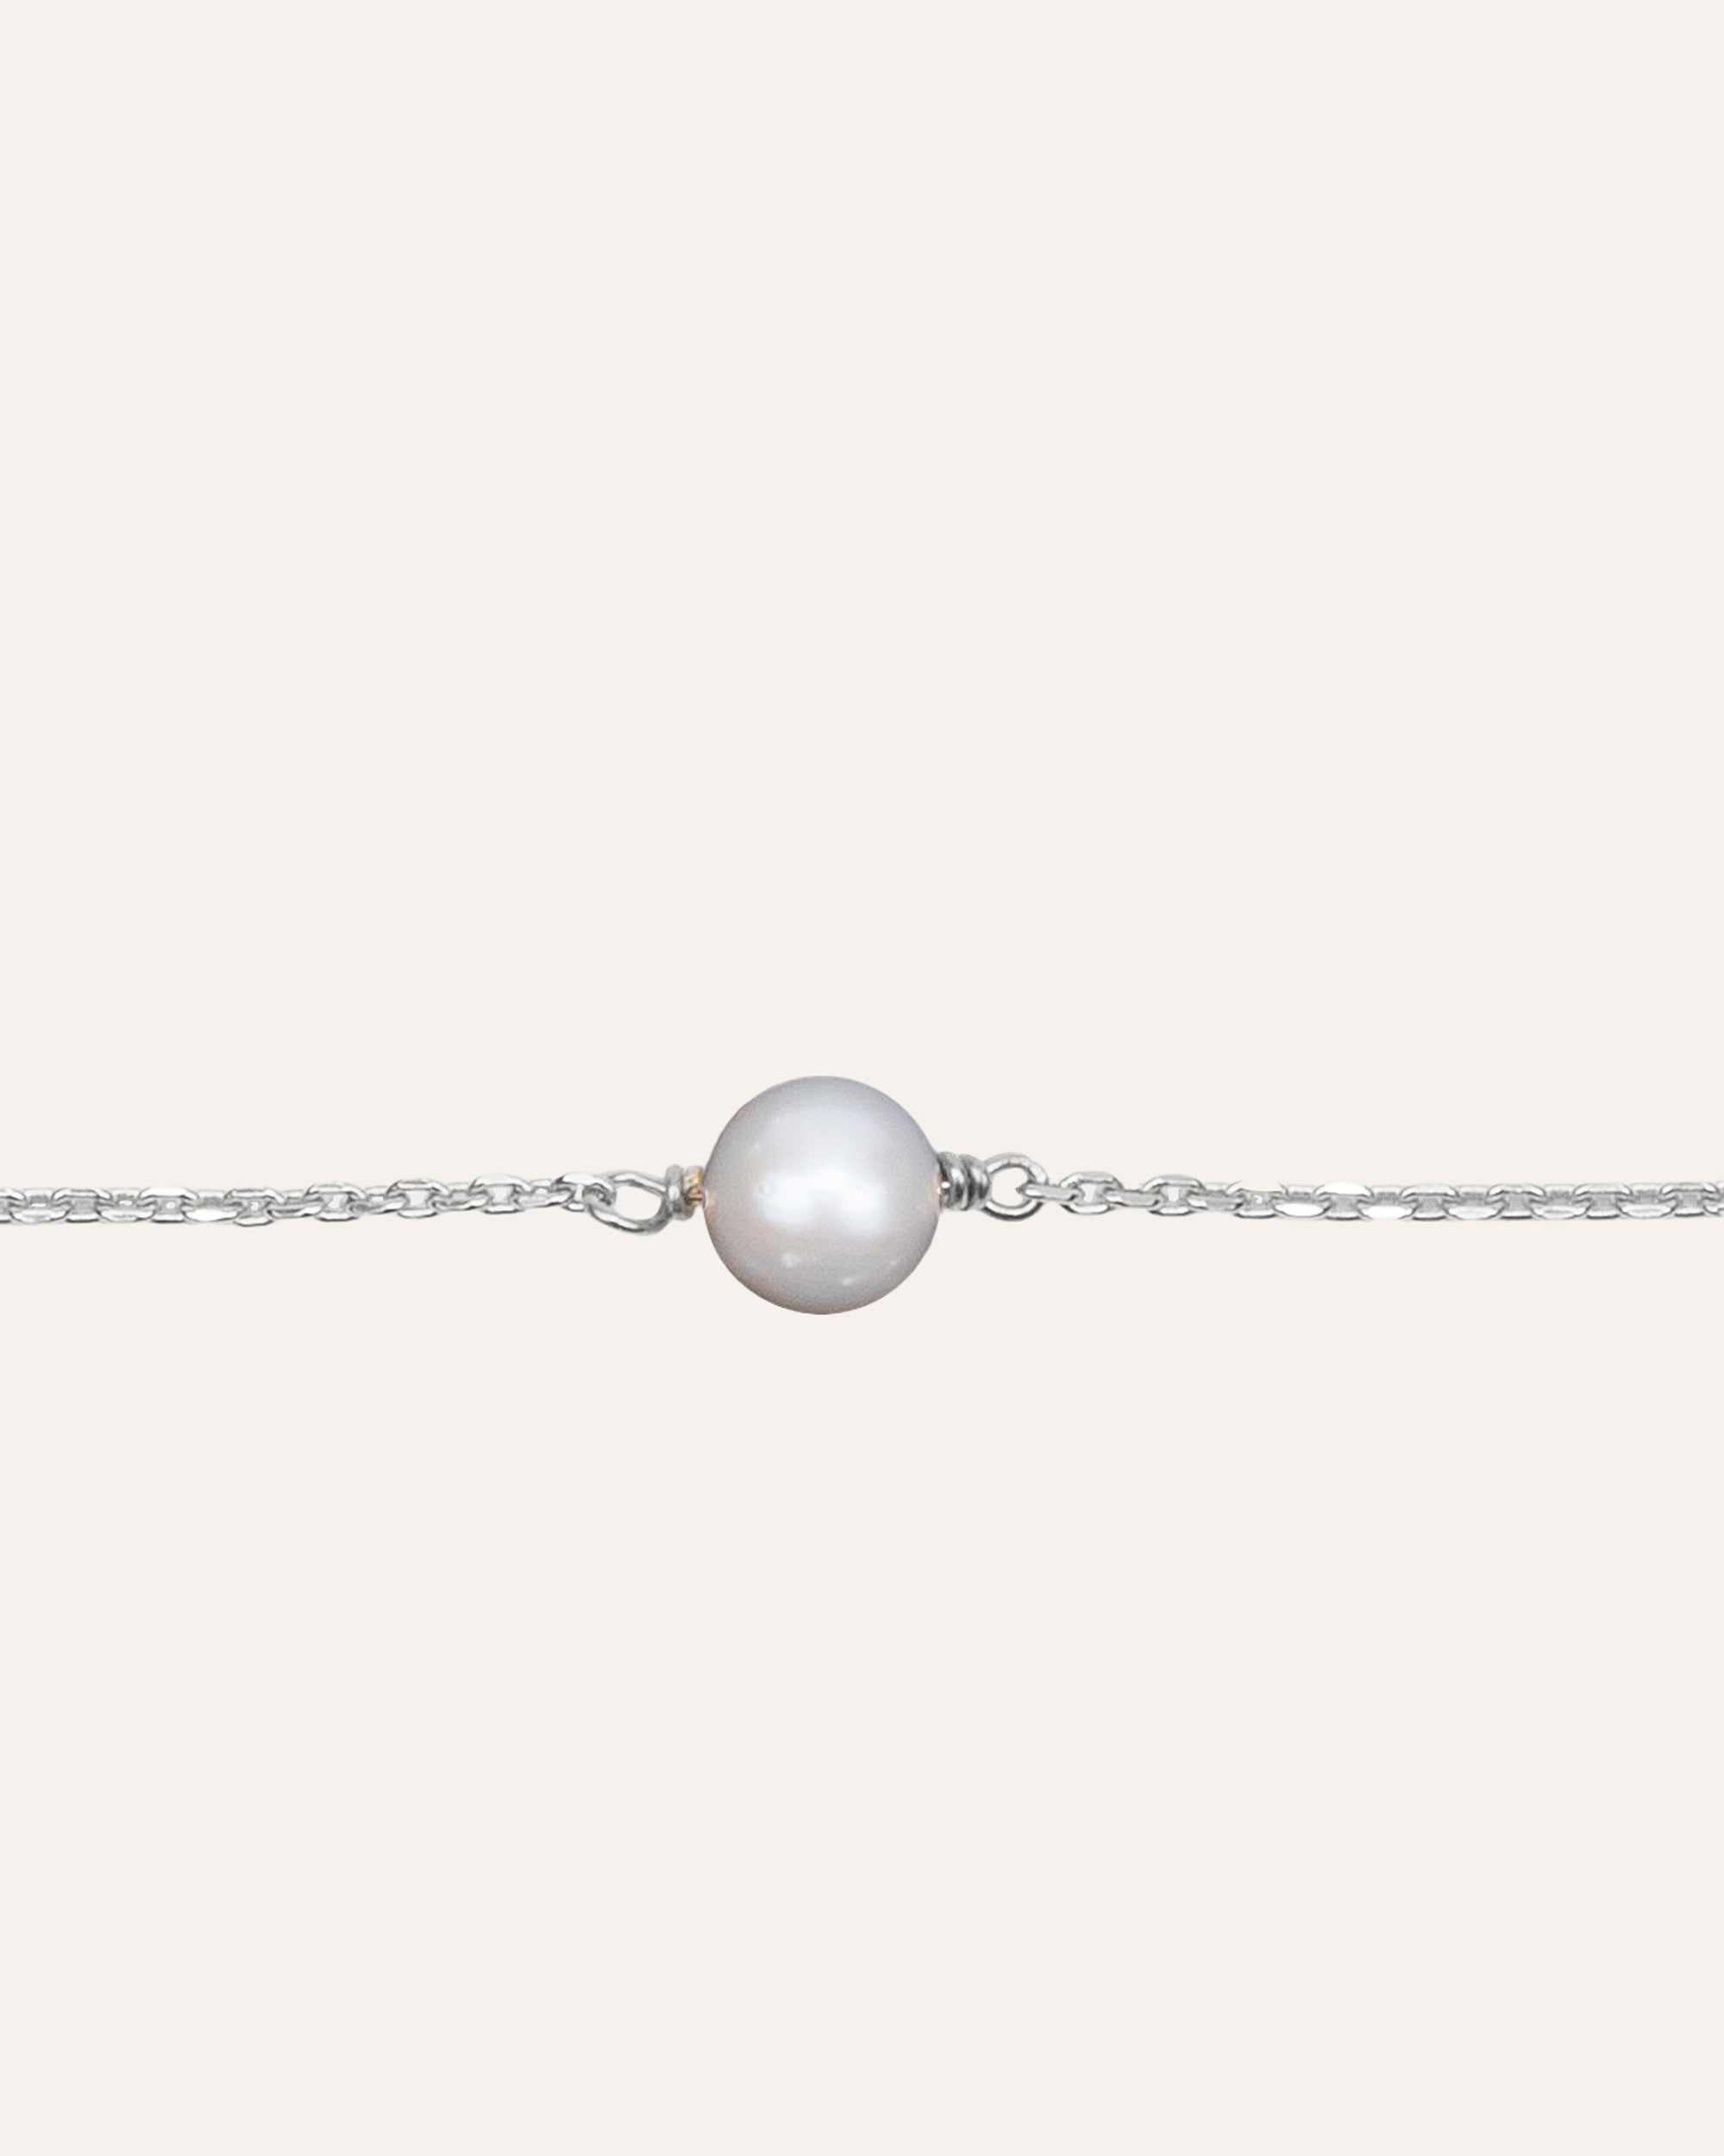 Bracelet fin en chaîne forçat en argent massif 925 composé d'une petite perle de culture ronde made in France.